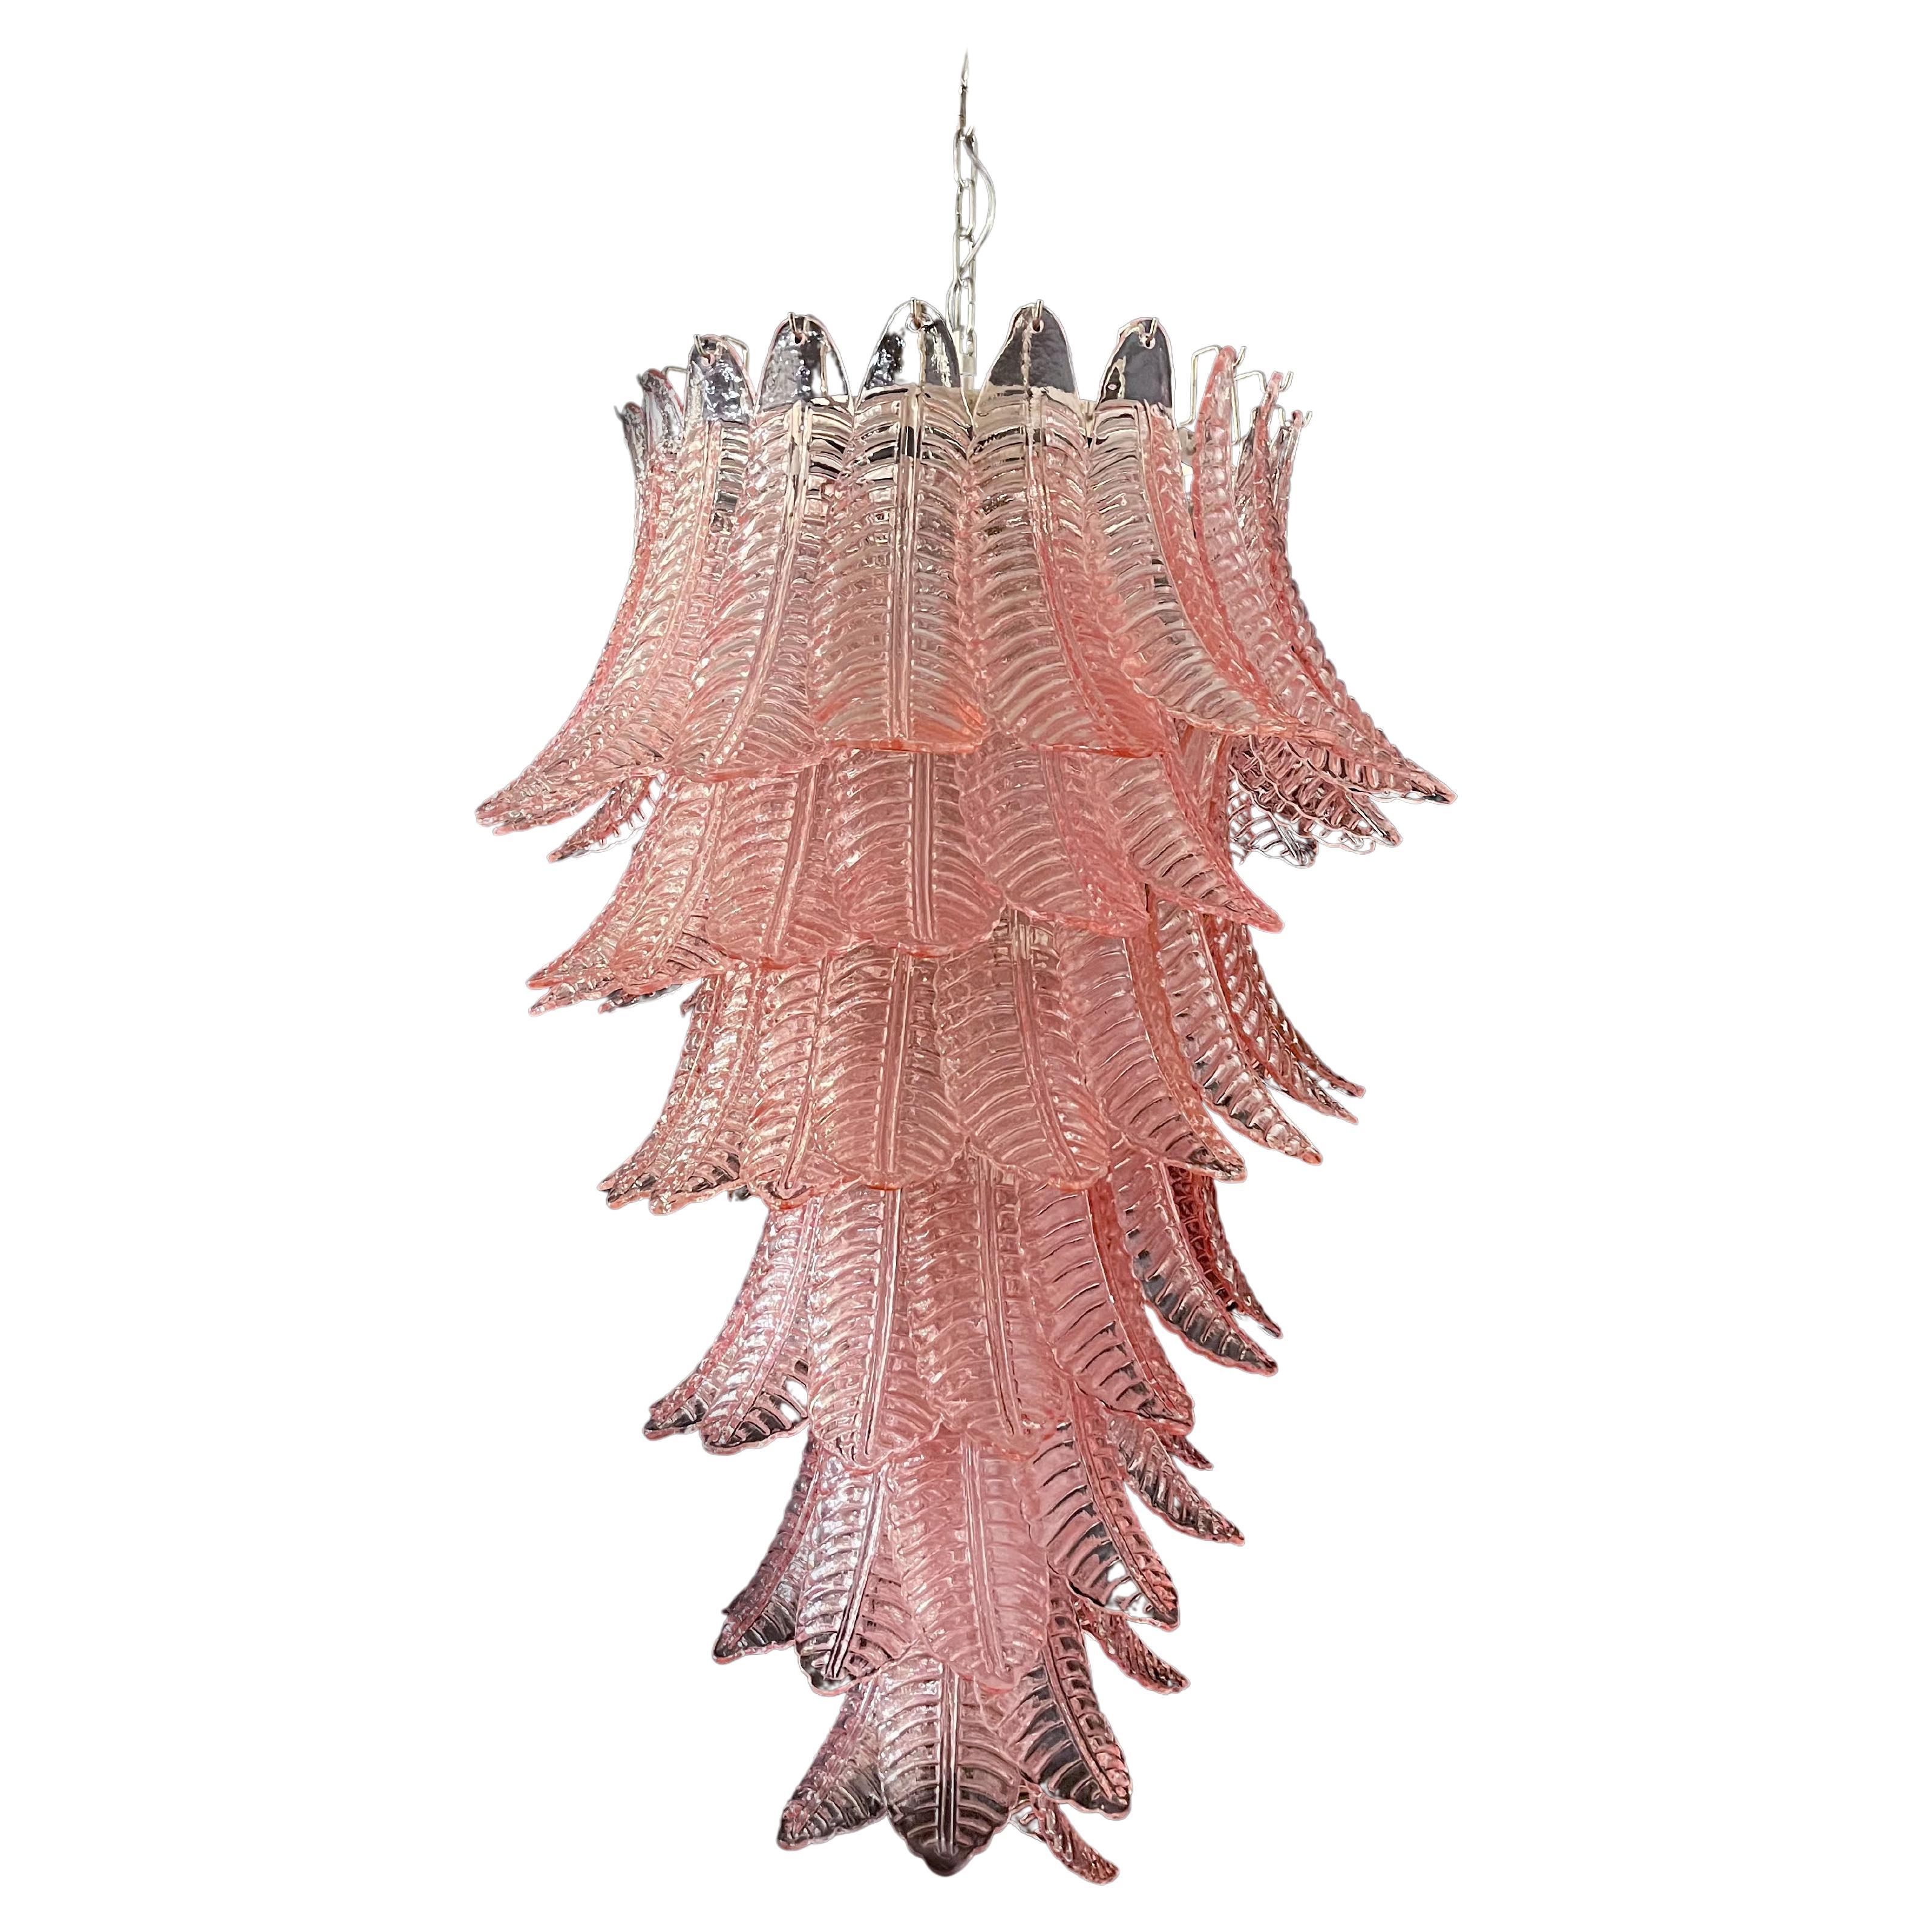 Riesiger italienischer Murano-Flammen-Kronleuchter aus Felci-Glas - 83 rosa Gläser